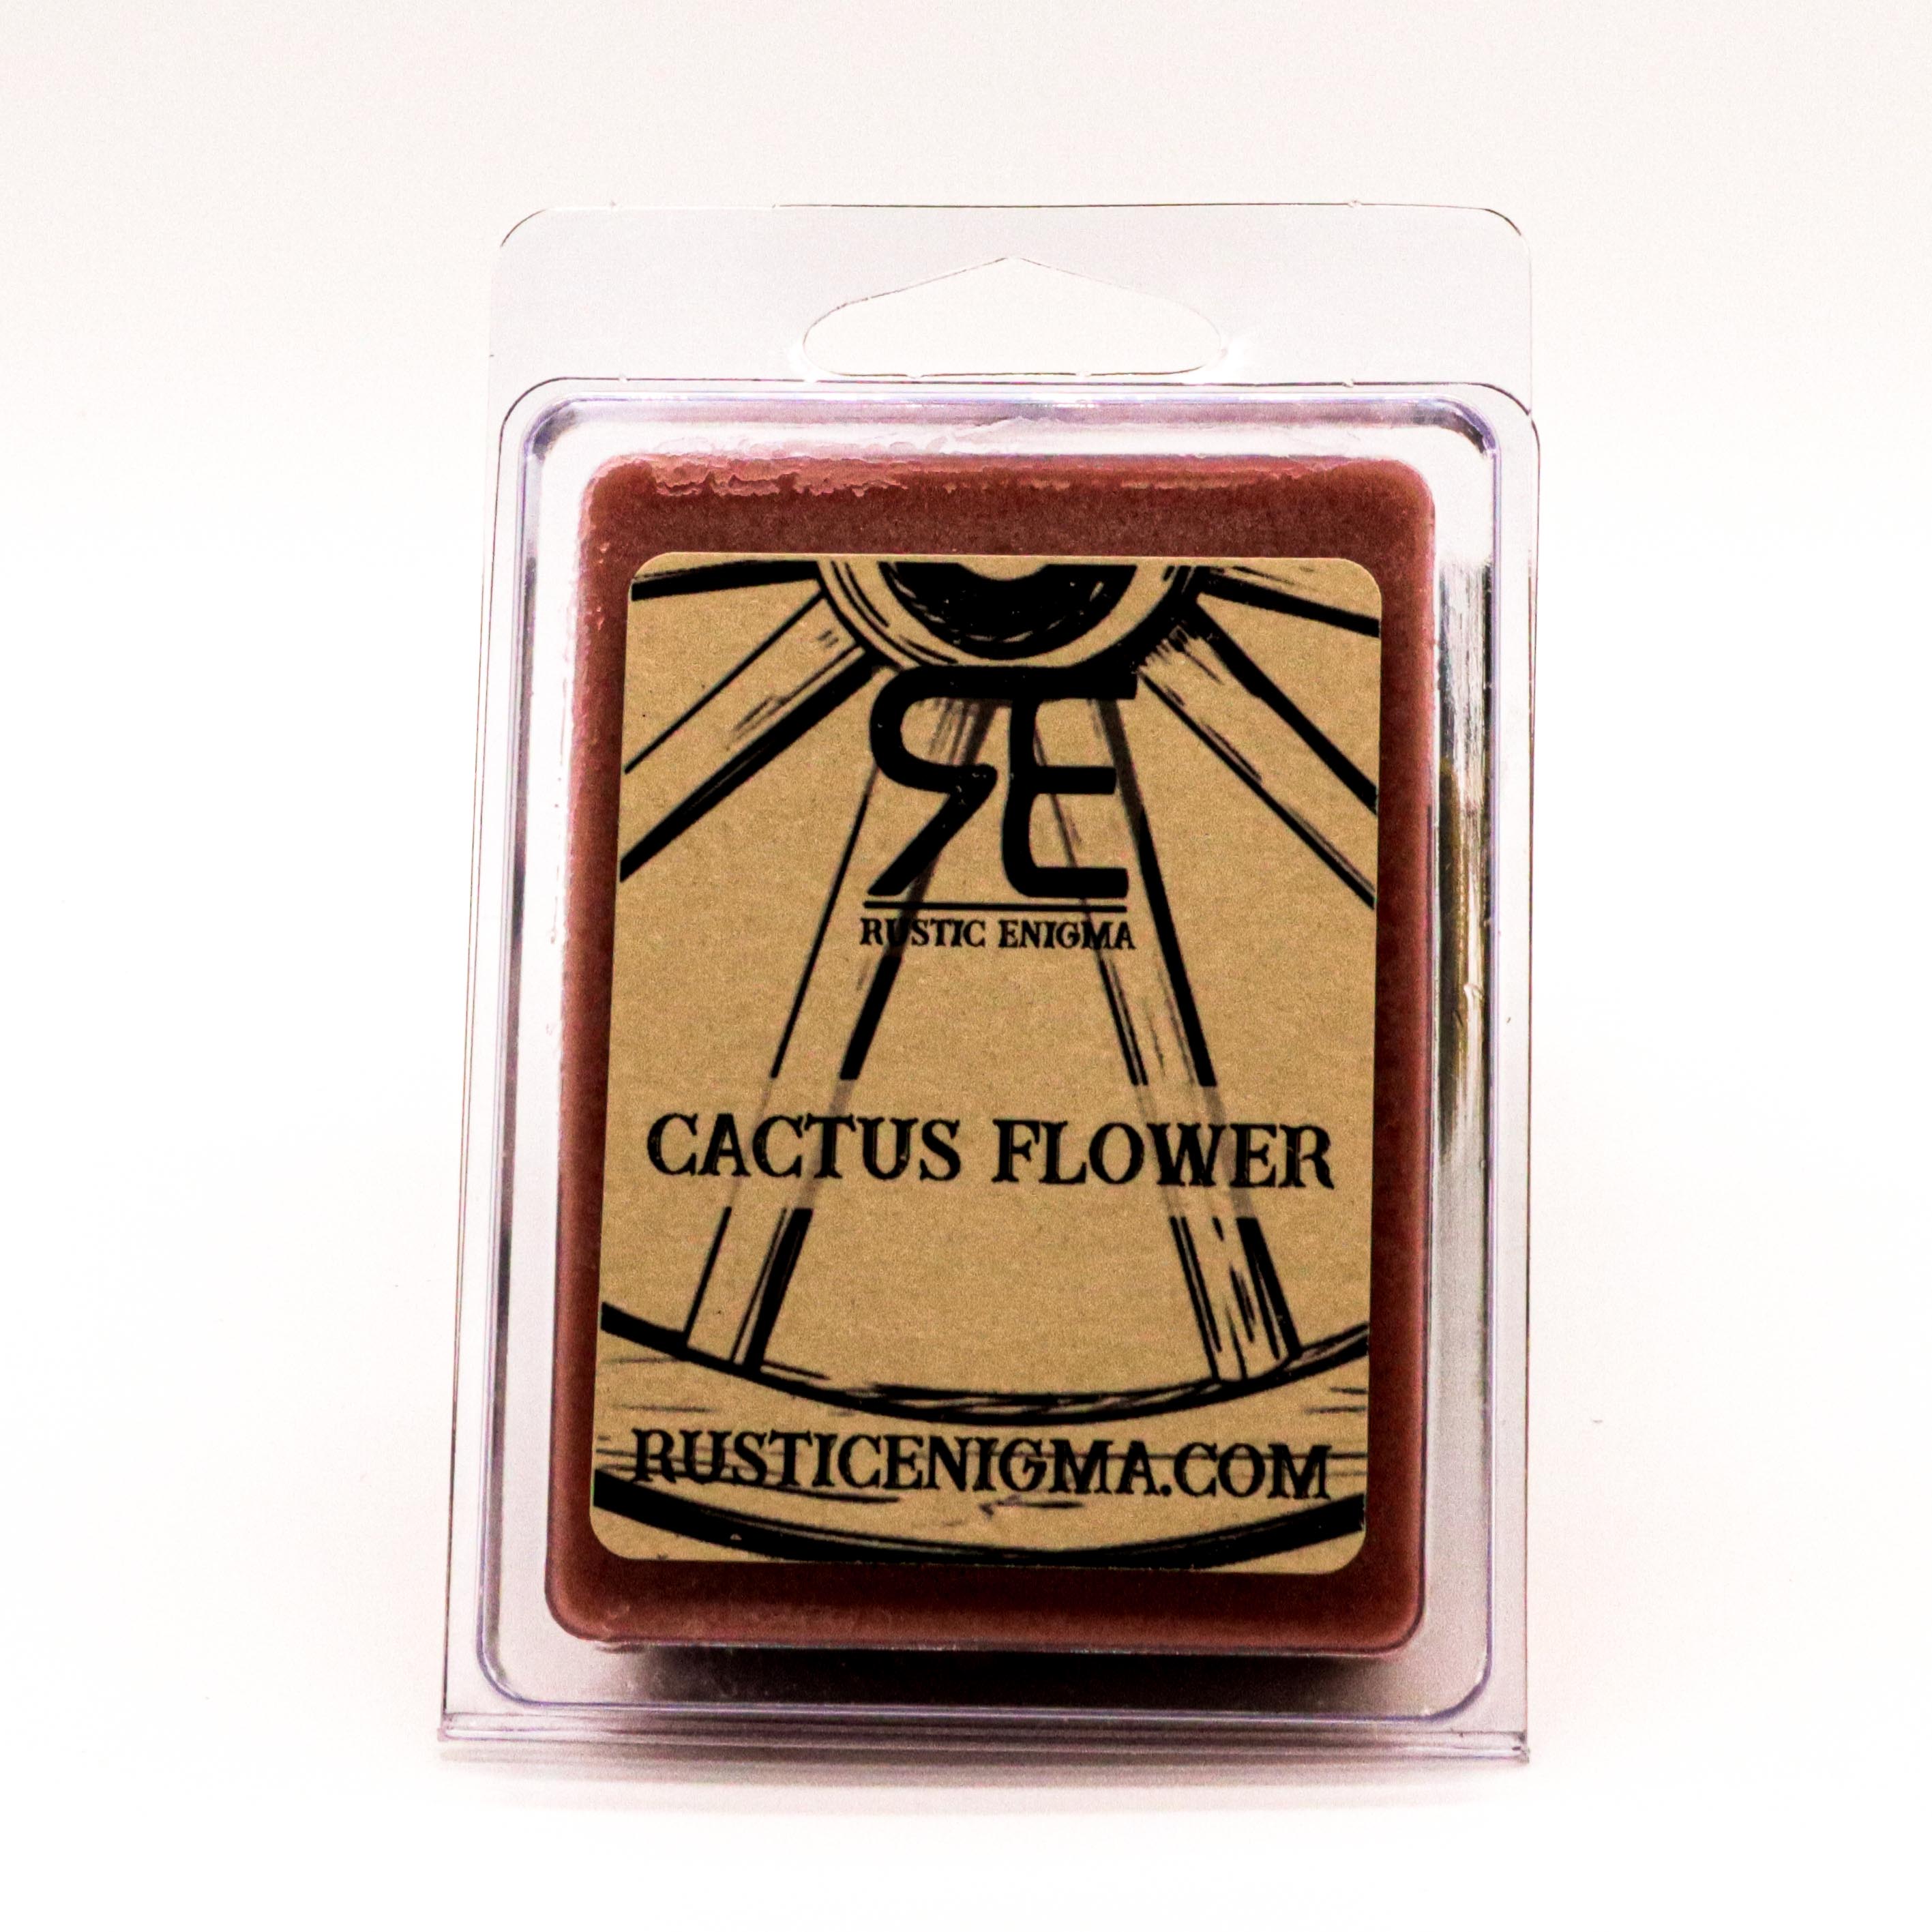 Cactus Flower Melts